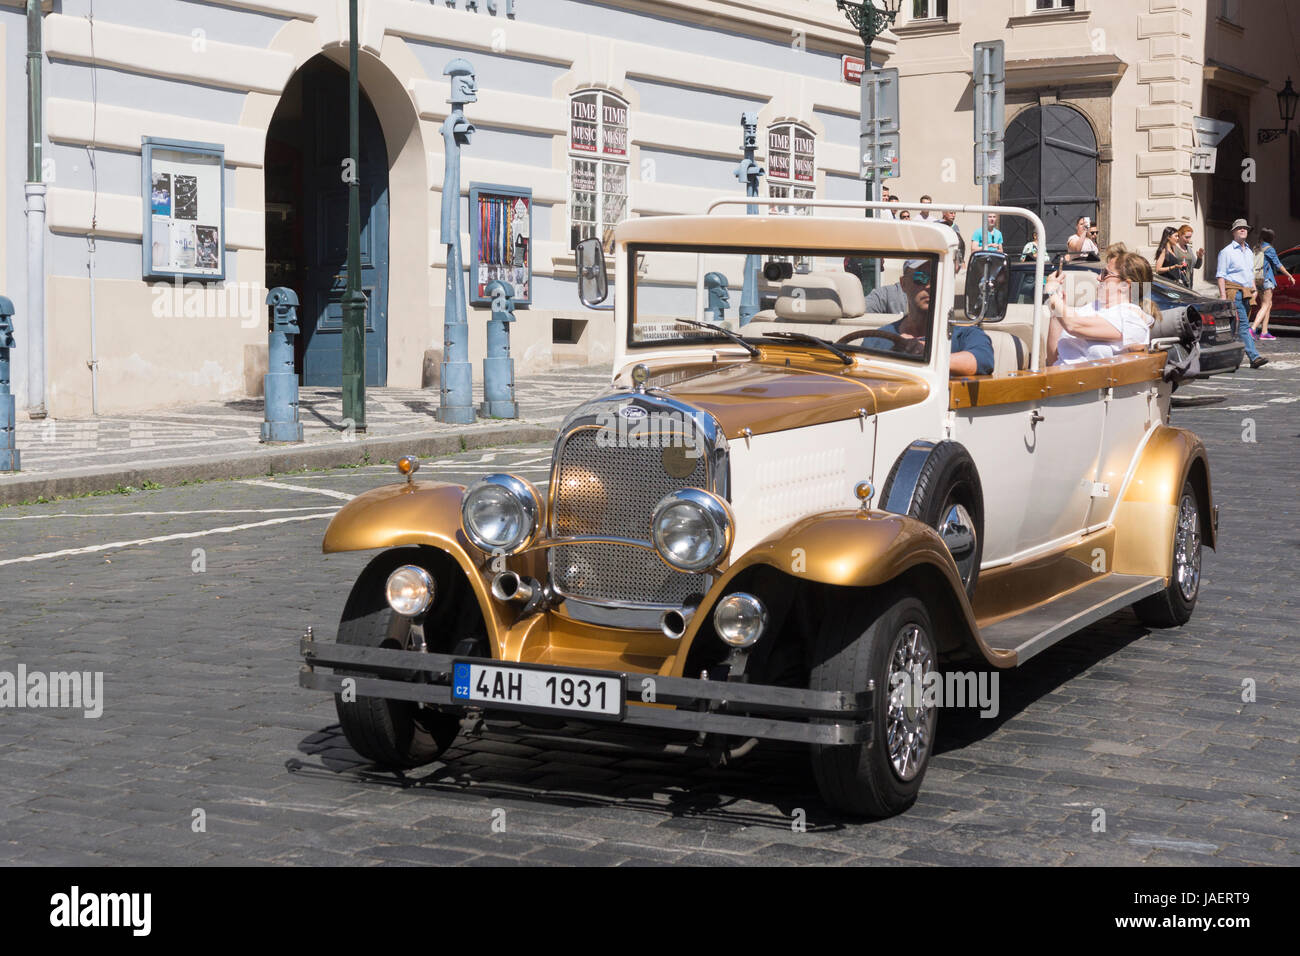 Les touristes à visiter dans une limousine vintage Alfa Romeo Spider lors d'une visite du centre-ville de Prague Banque D'Images